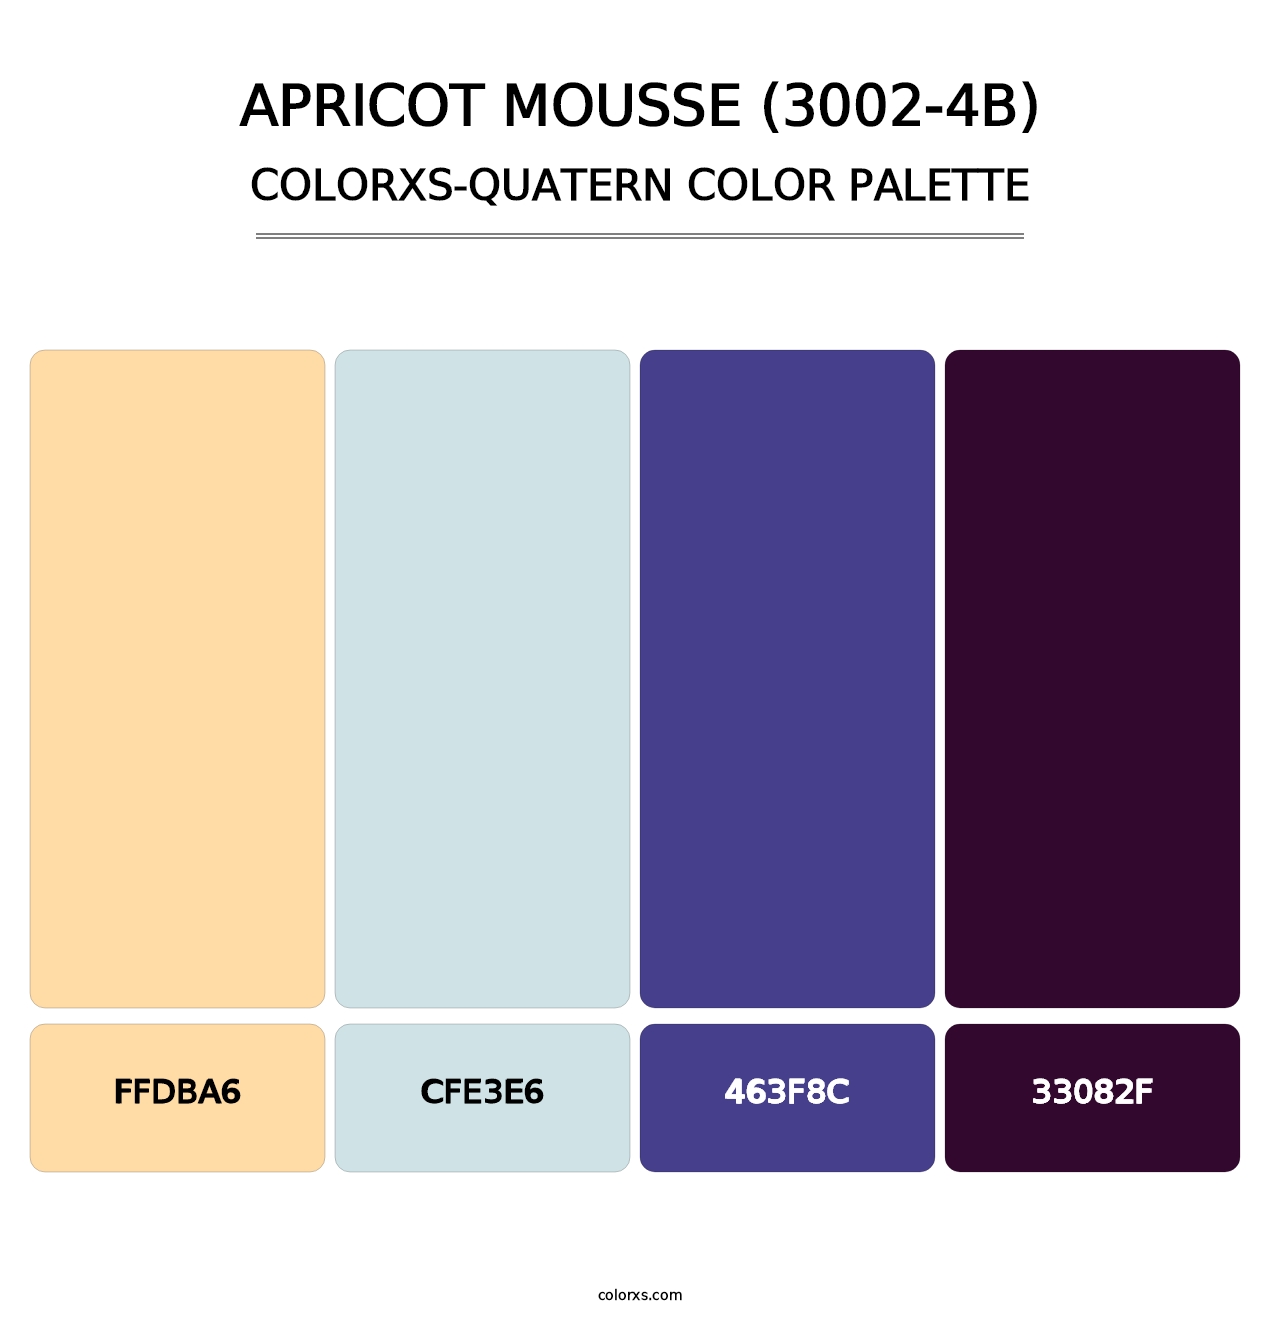 Apricot Mousse (3002-4B) - Colorxs Quatern Palette